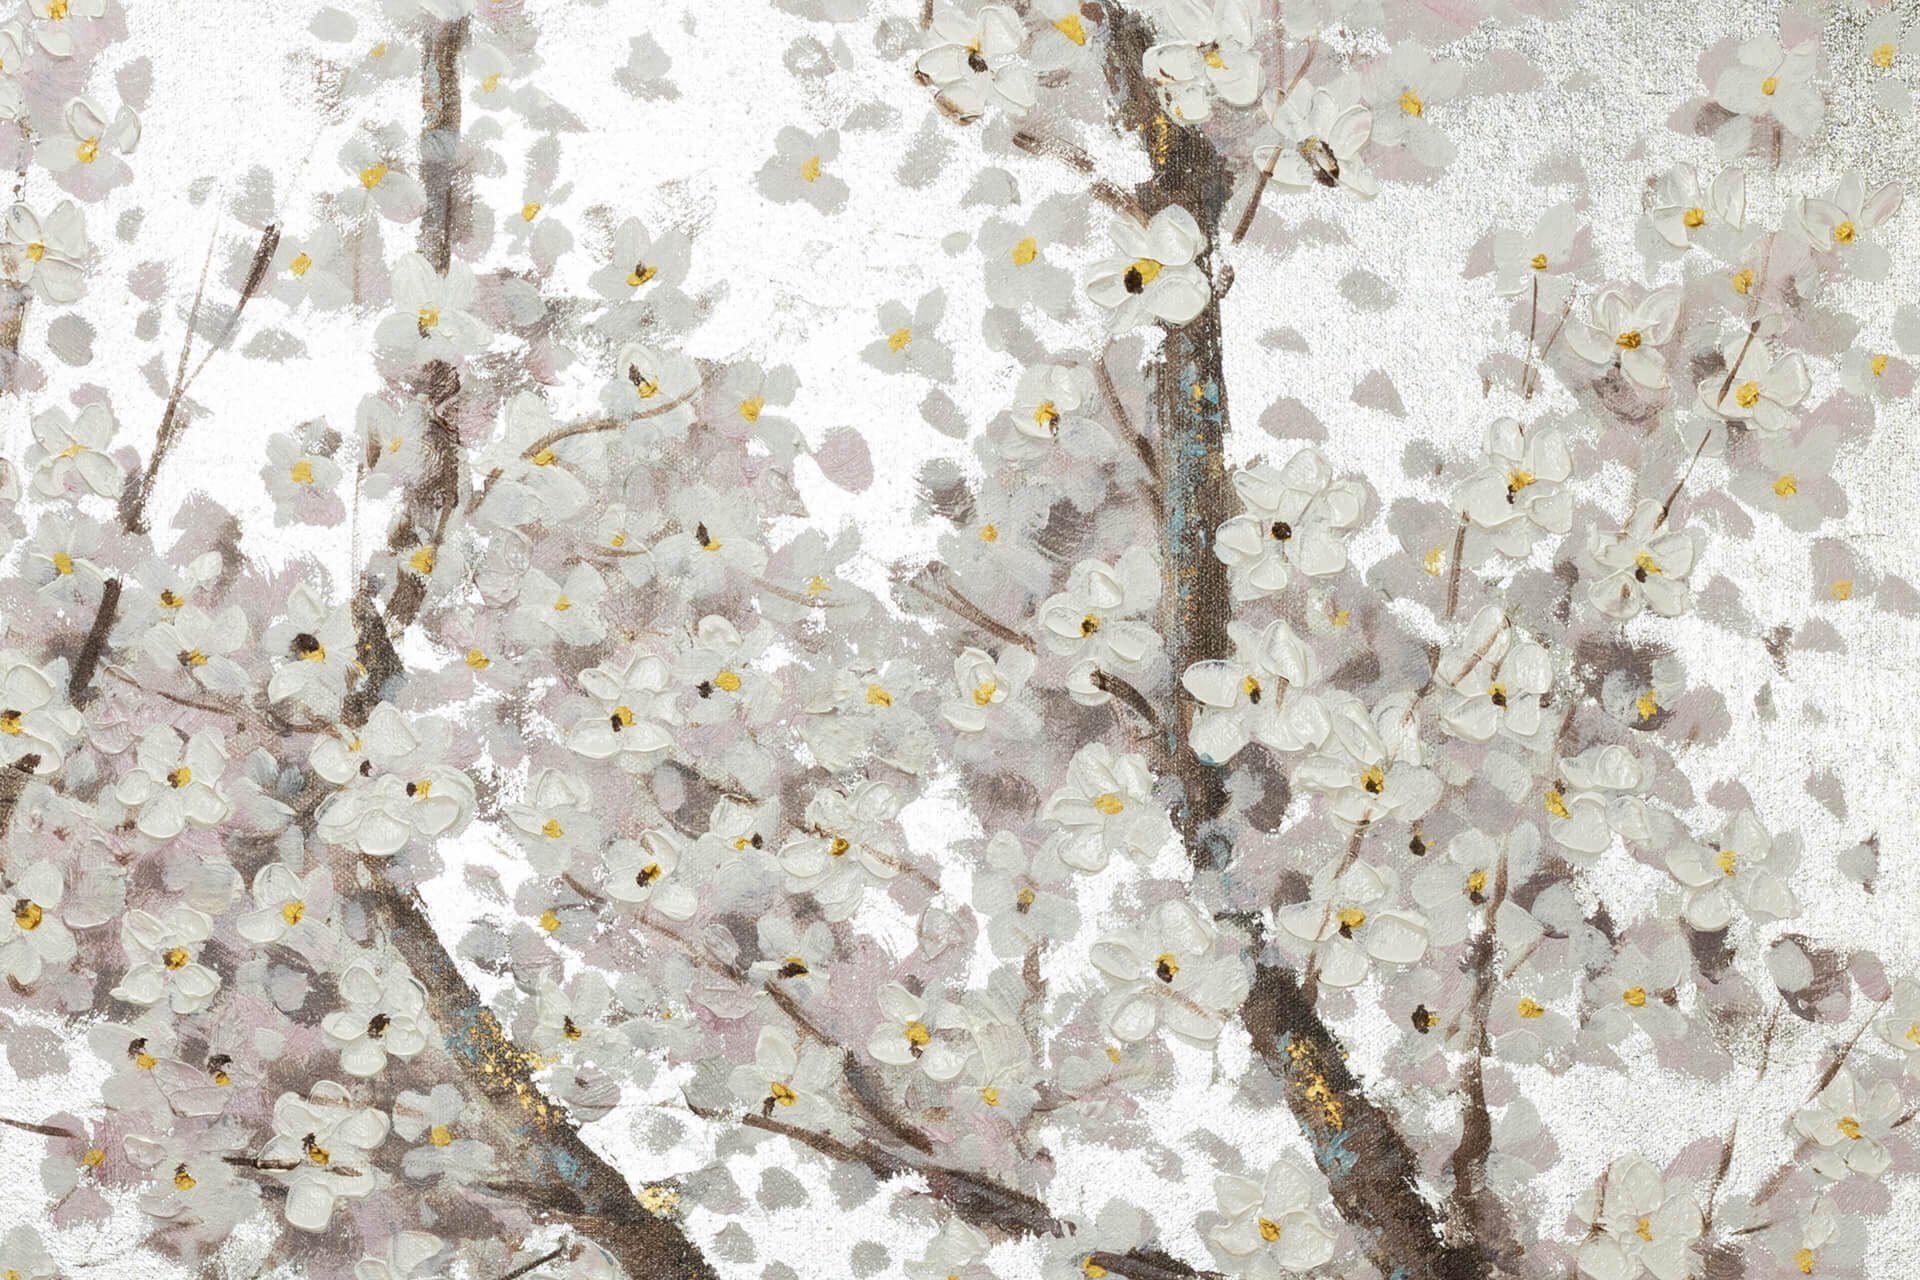 Gemälde Bloom in Wandbild HANDGEMALT KUNSTLOFT Wohnzimmer 120x60 Leinwandbild Pearls 100% cm,